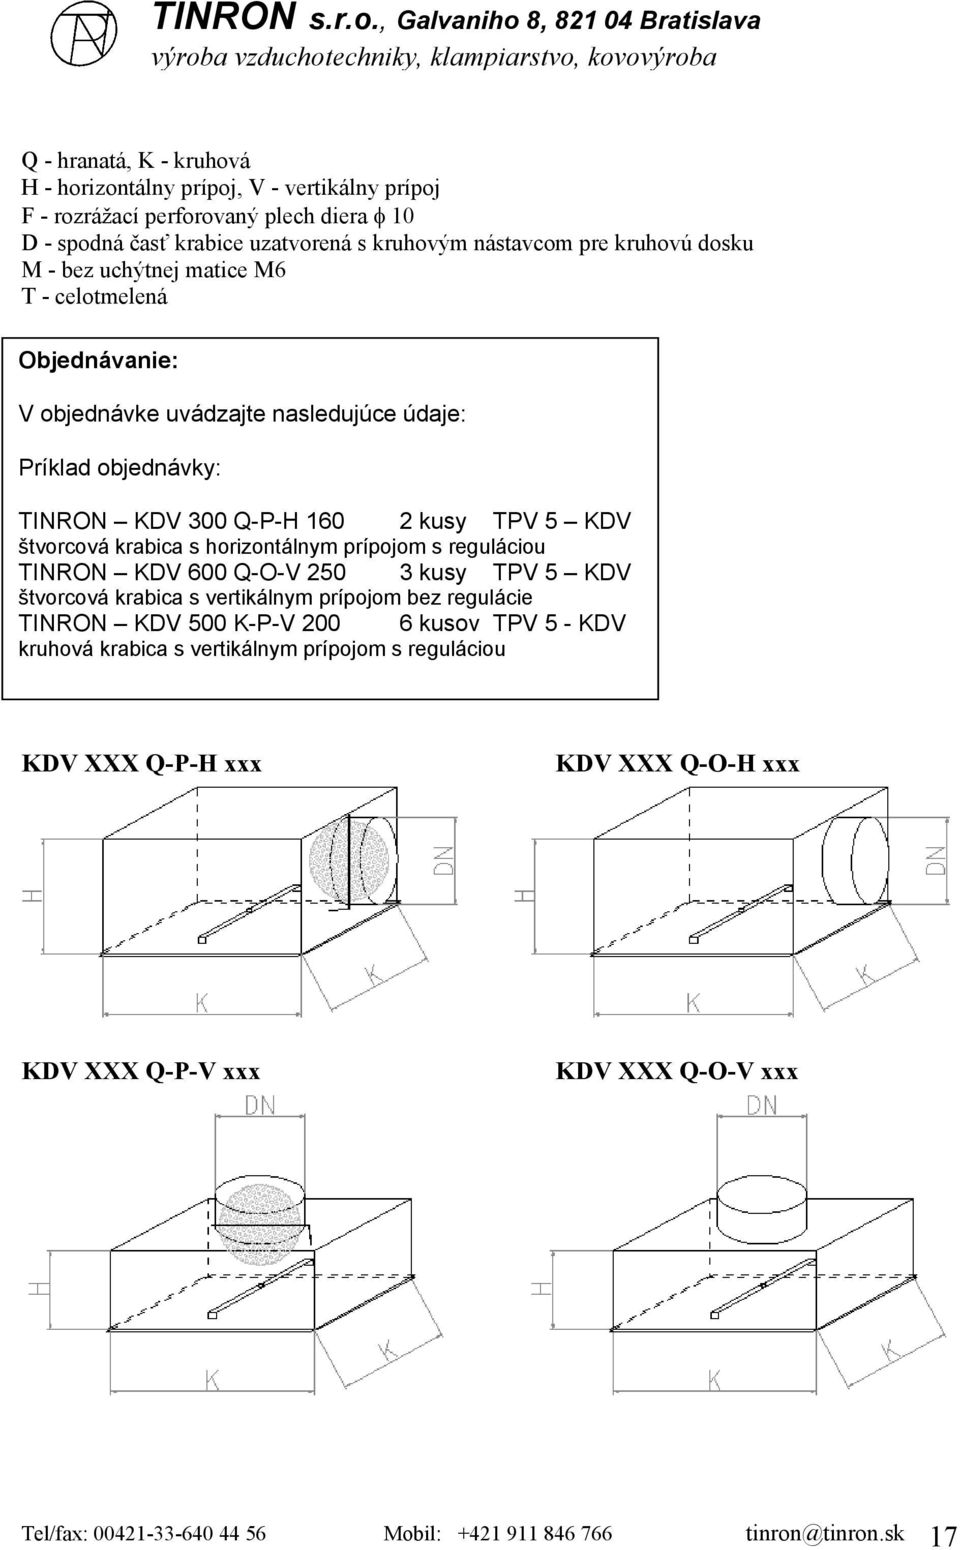 reguláciou TINRON KDV 600 Q-O-V 250 3 kusy TPV 5 KDV štvorcová krabica s vertikálnym prípojom bez regulácie TINRON KDV 500 K-P-V 200 6 kusov TPV 5 - KDV kruhová